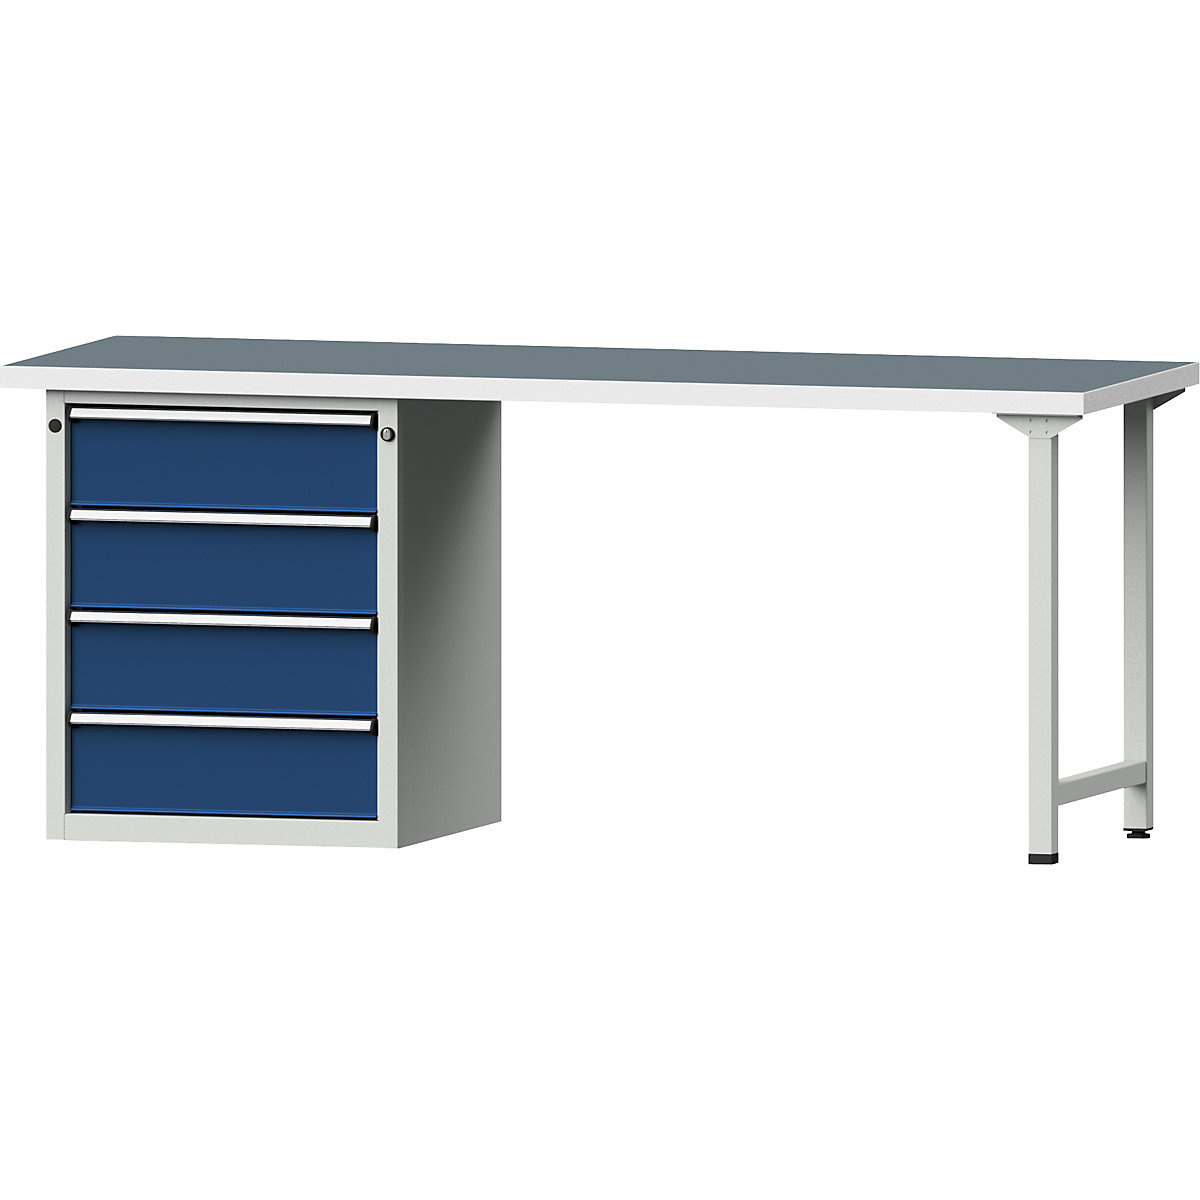 Dílenský stůl s rámovou konstrukcí – ANKE, 4 zásuvky, univerzální deska, šířka 2000 mm